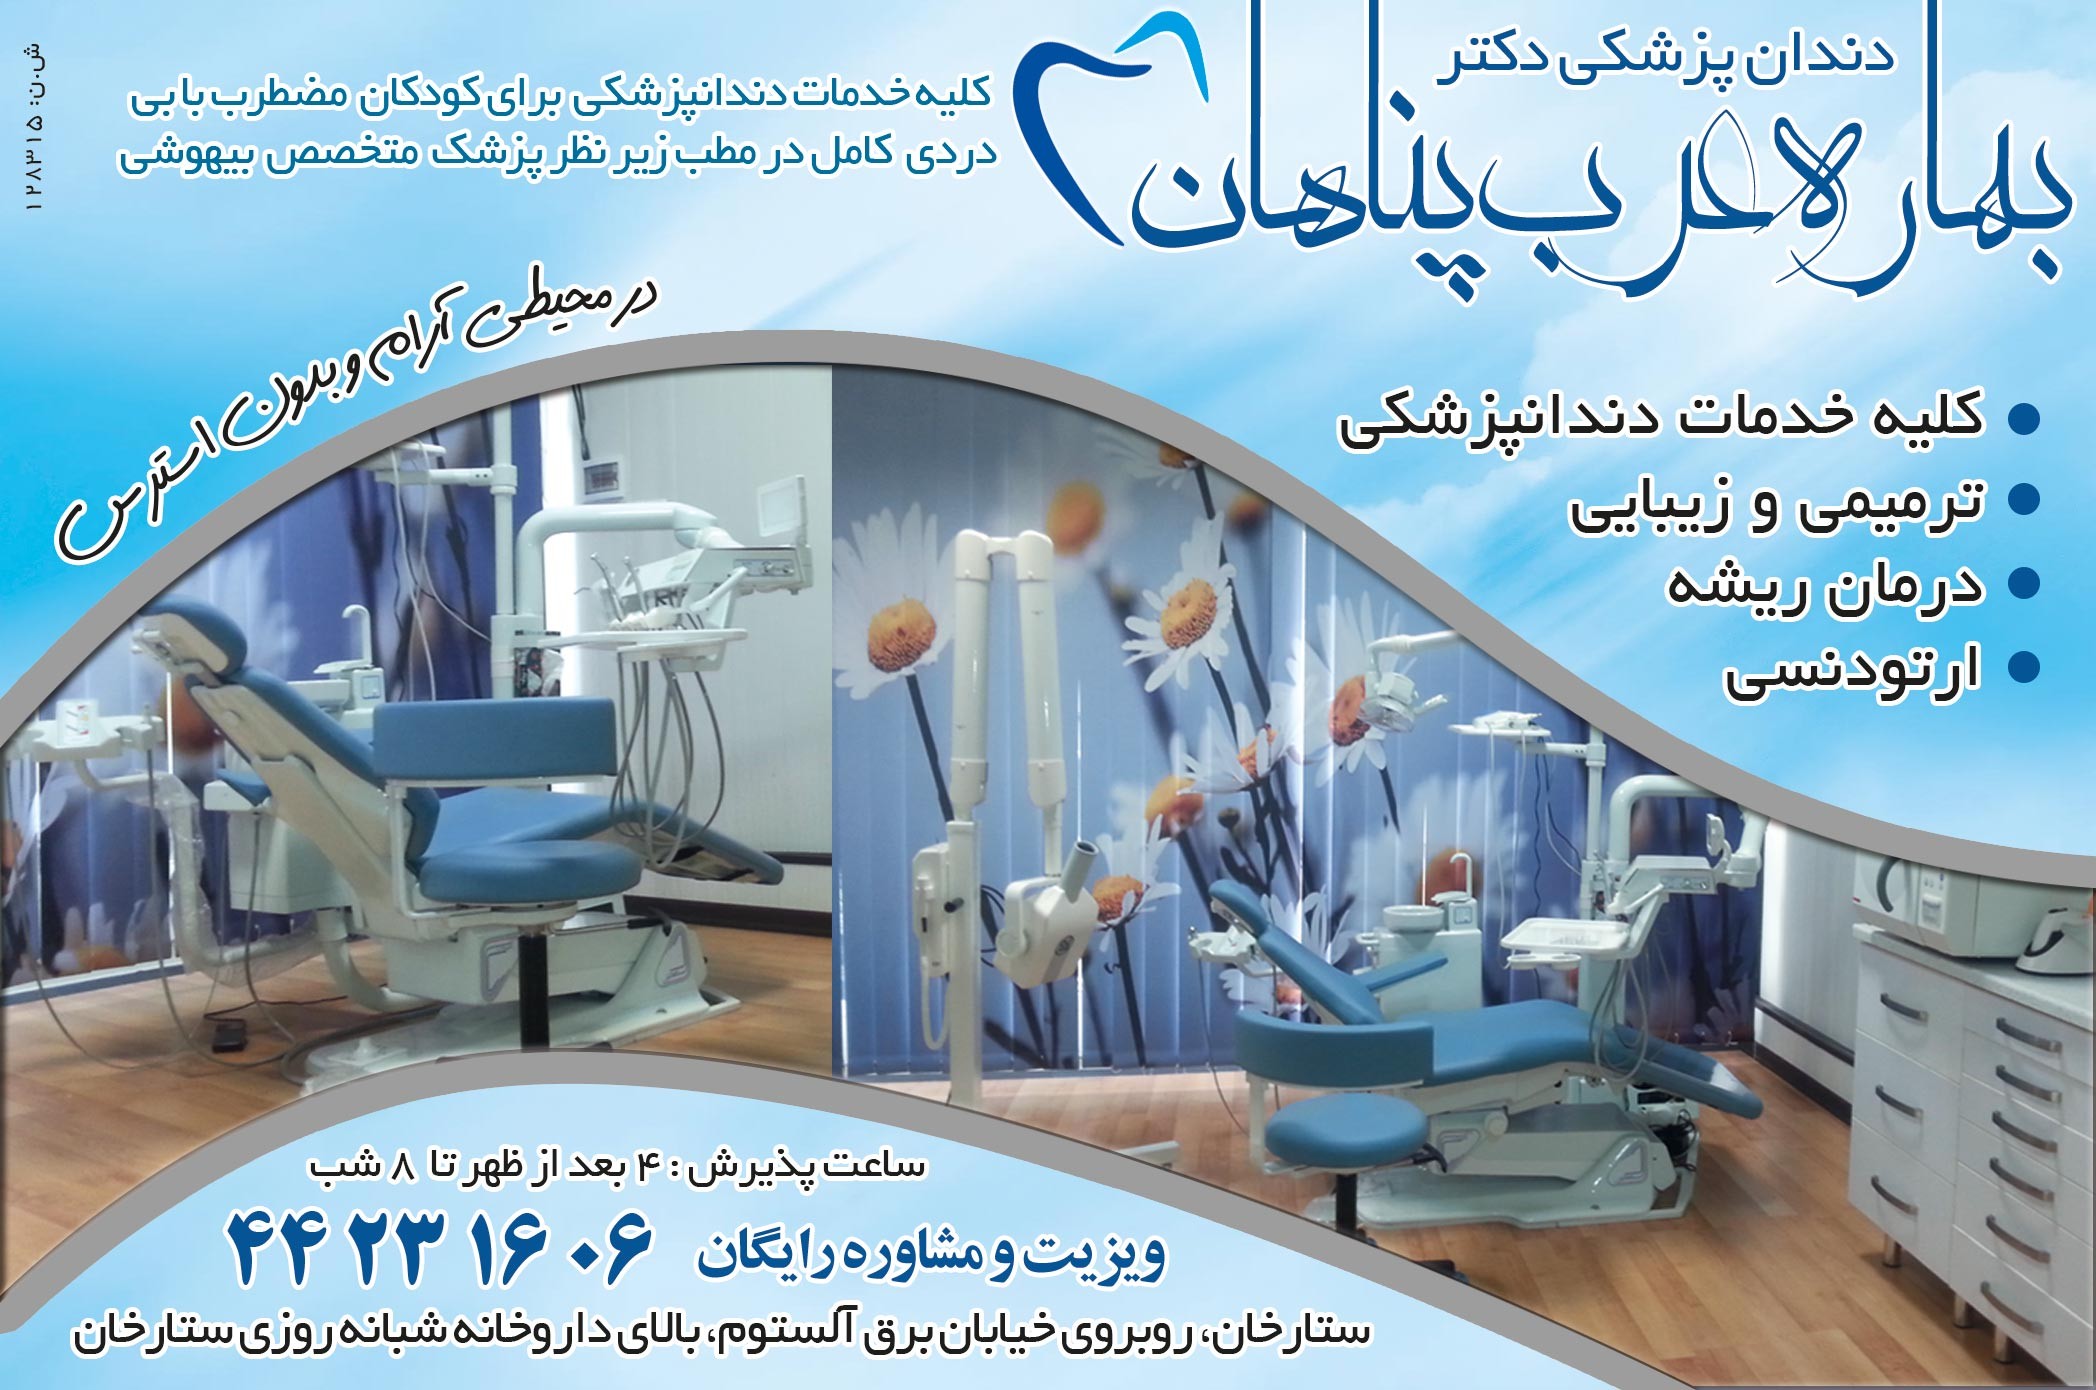 دندان پزشکی دکتر بهاره عرب پناها ...